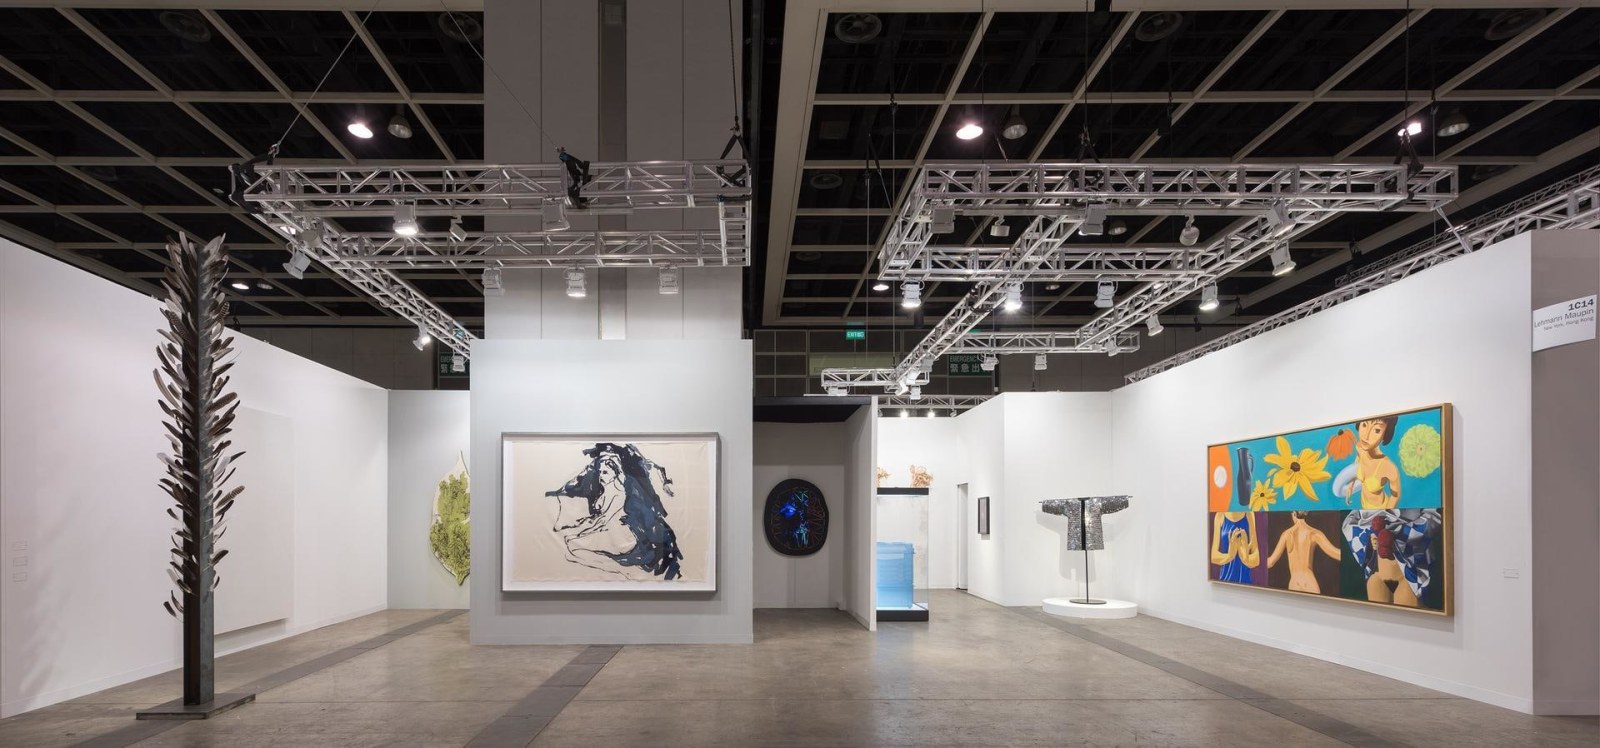  Installation view, Booth 1C14, Art Basel Hong Kong 2016